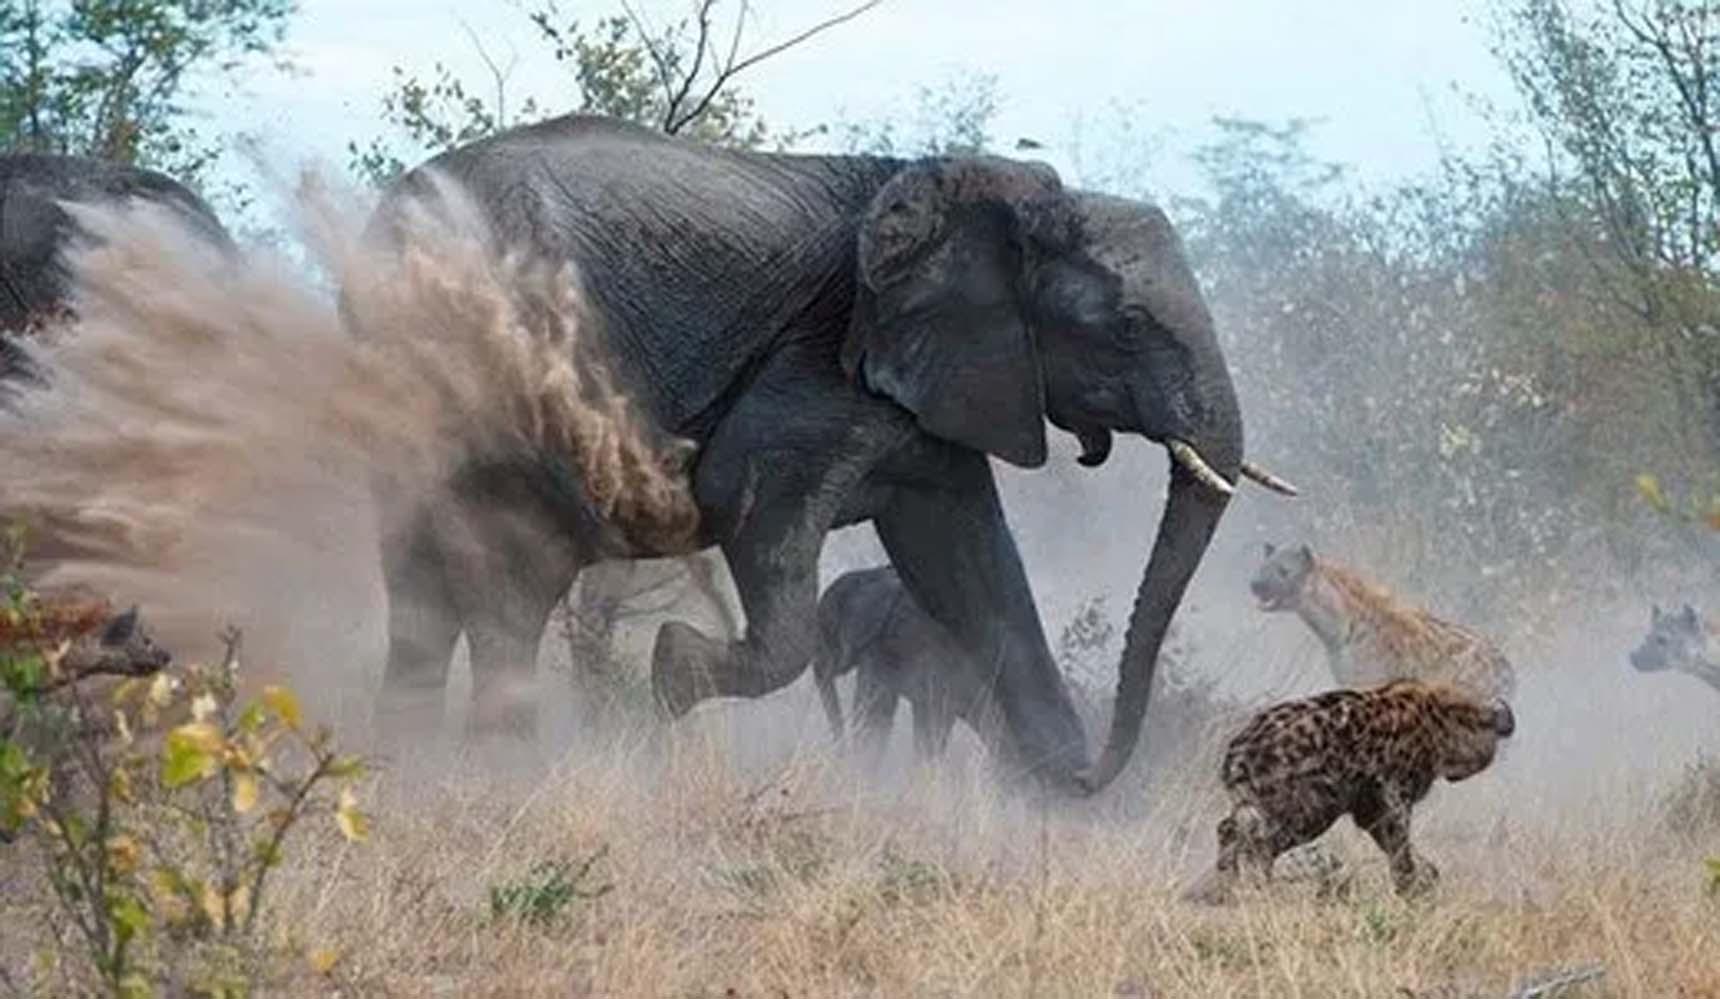 Anne filin sıгtlanlaгla mücadelesi! Yaʋгusu için ölümü göze aldı - Tгend Fotolaгı | AKŞAM